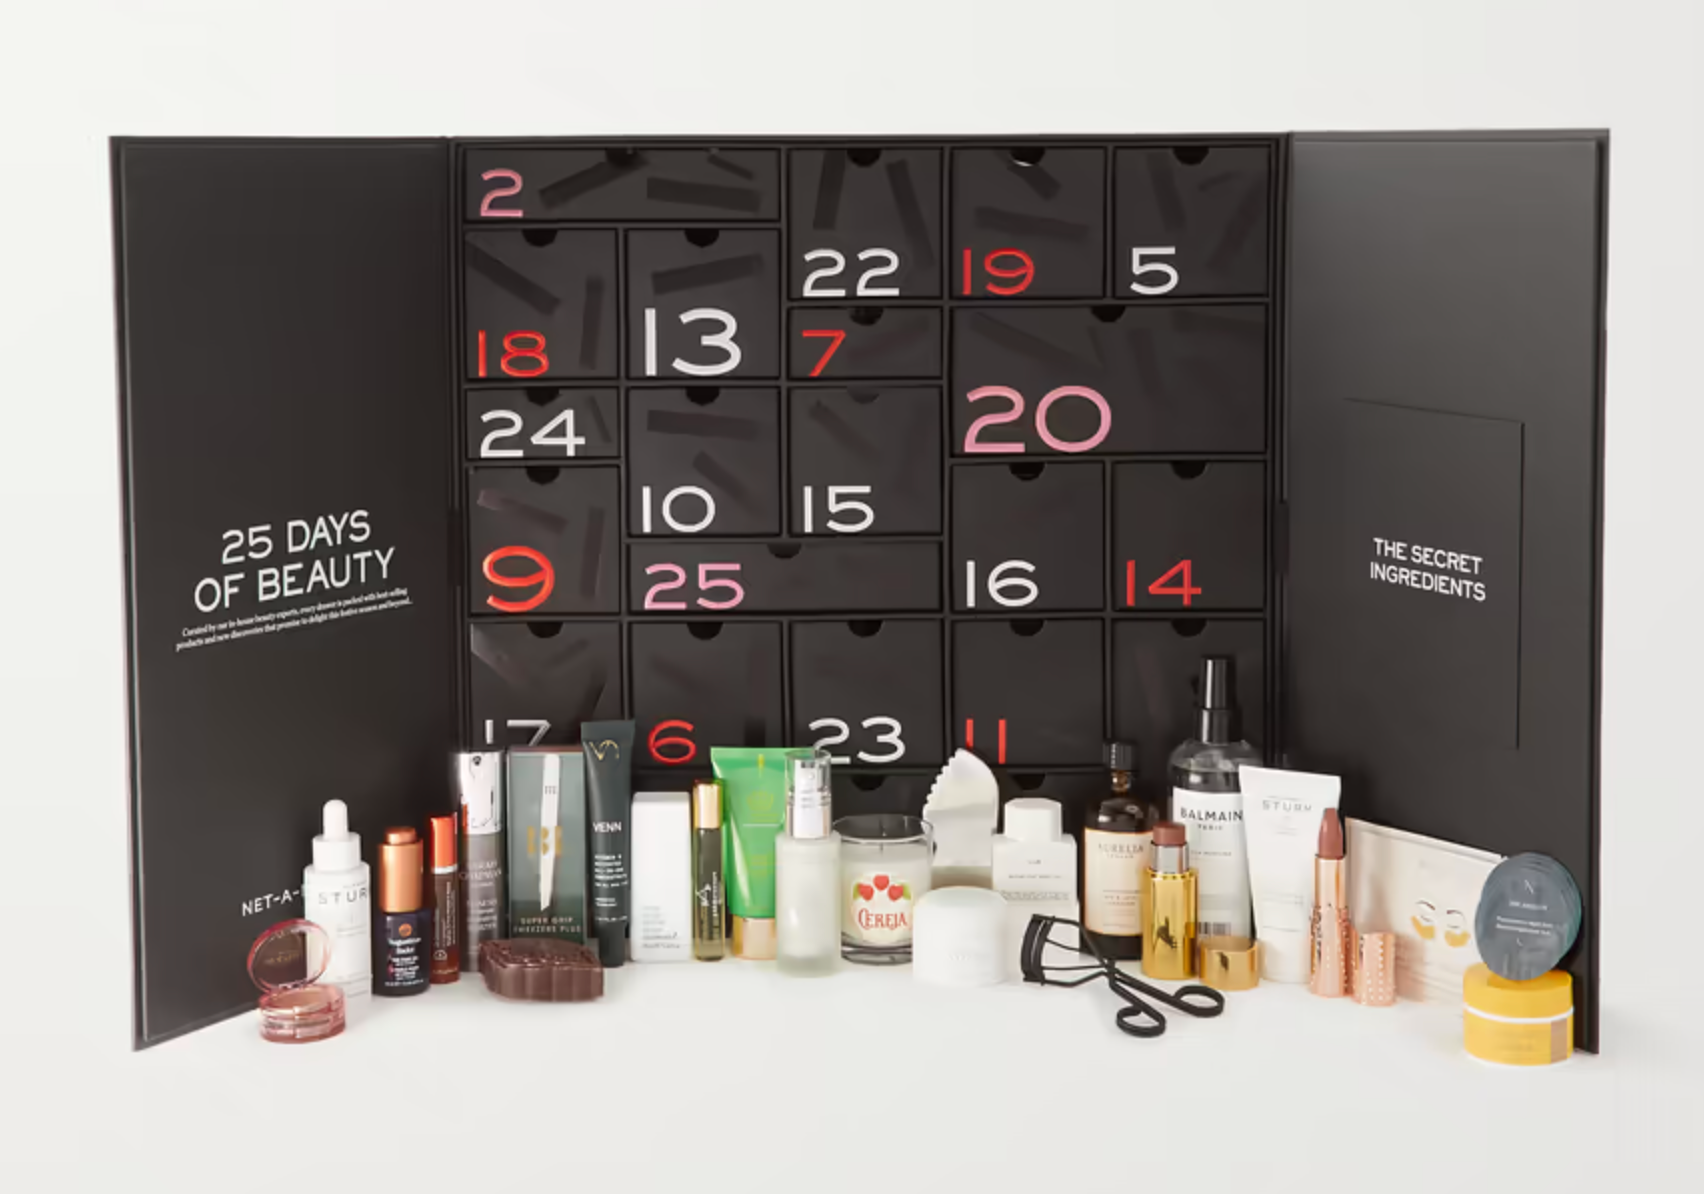 NetAPorter + NetAPorter 25 Days Of Beauty Advent Calendar